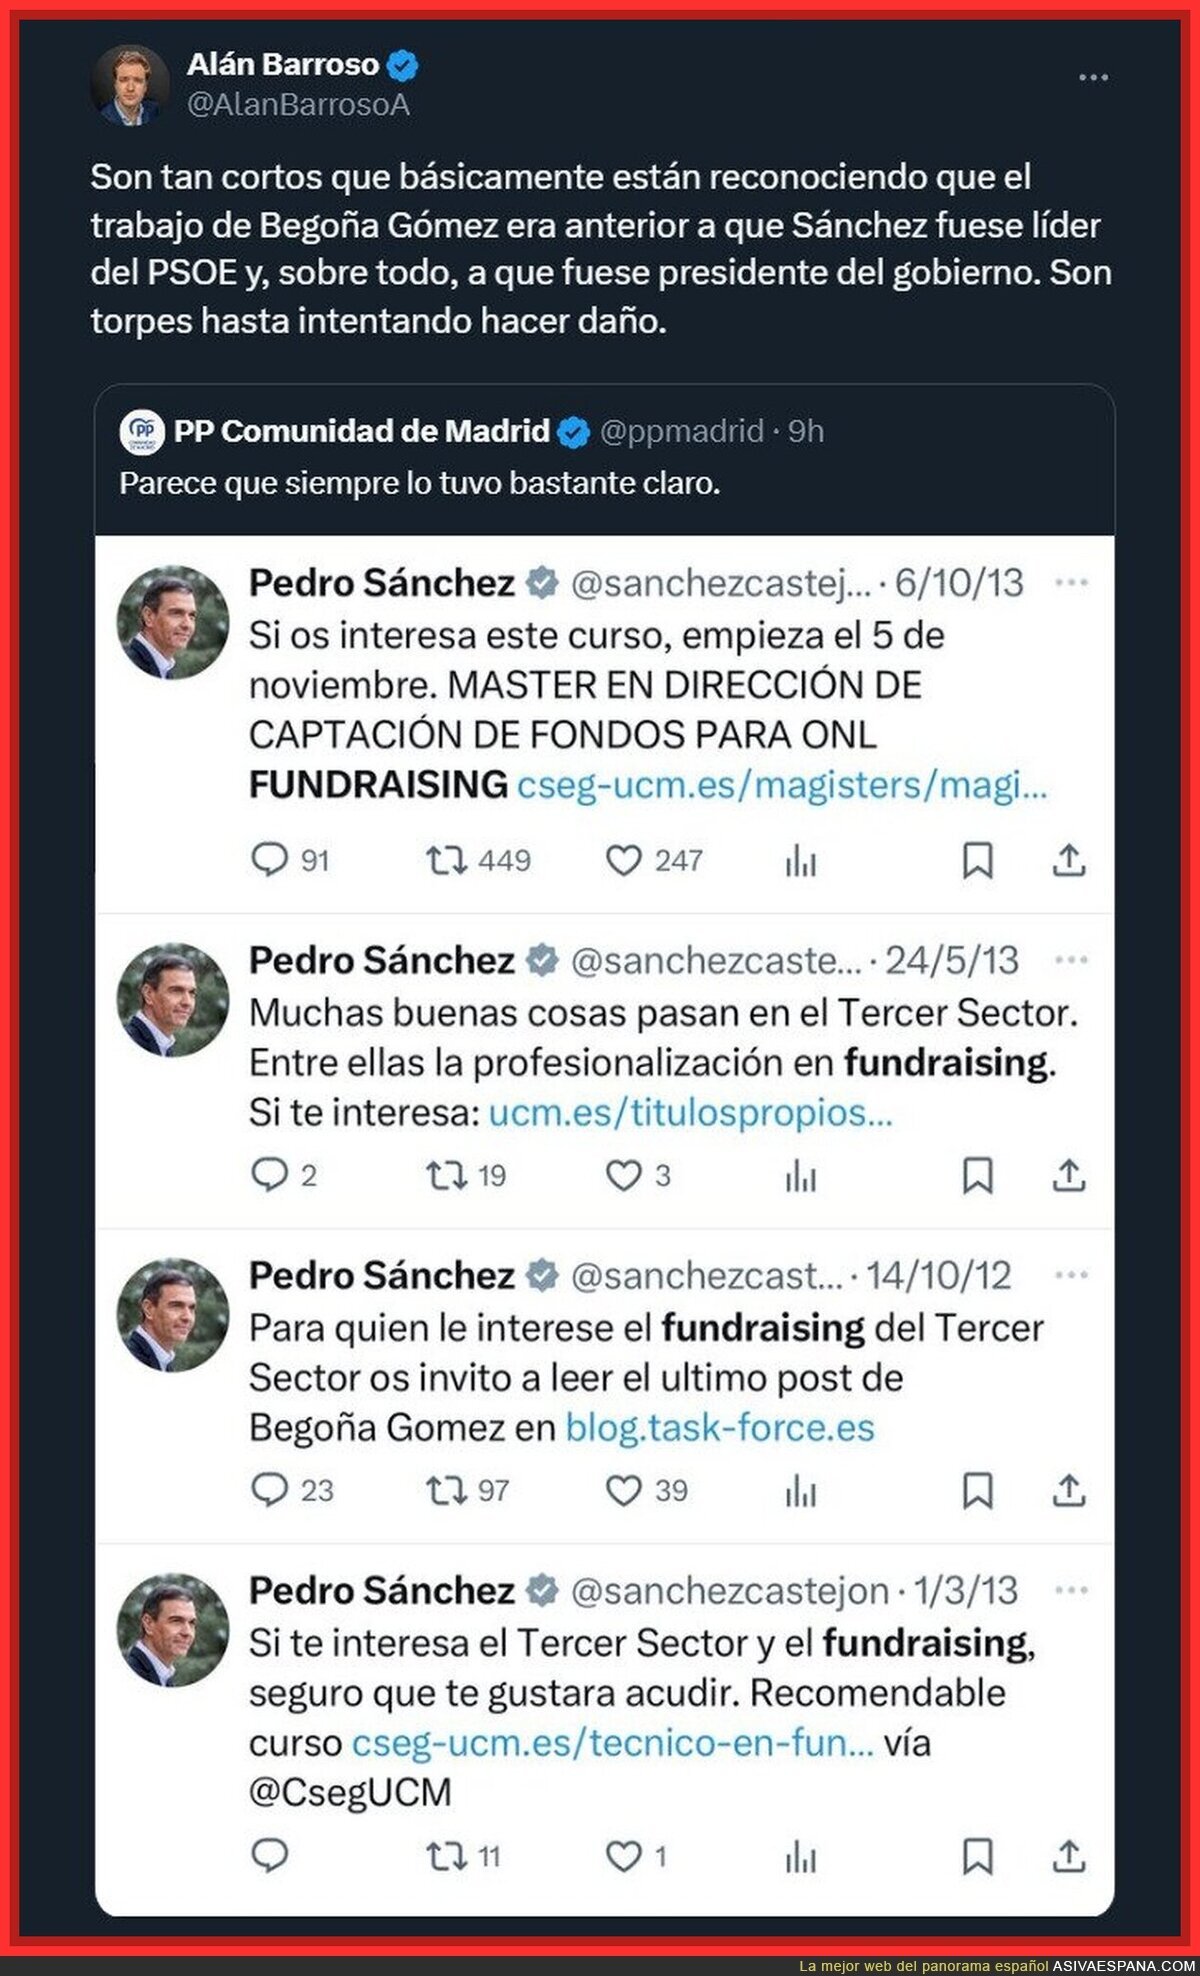 Esta no la vi venir: el PP Madrid defendiendo a Pedro Sánchez